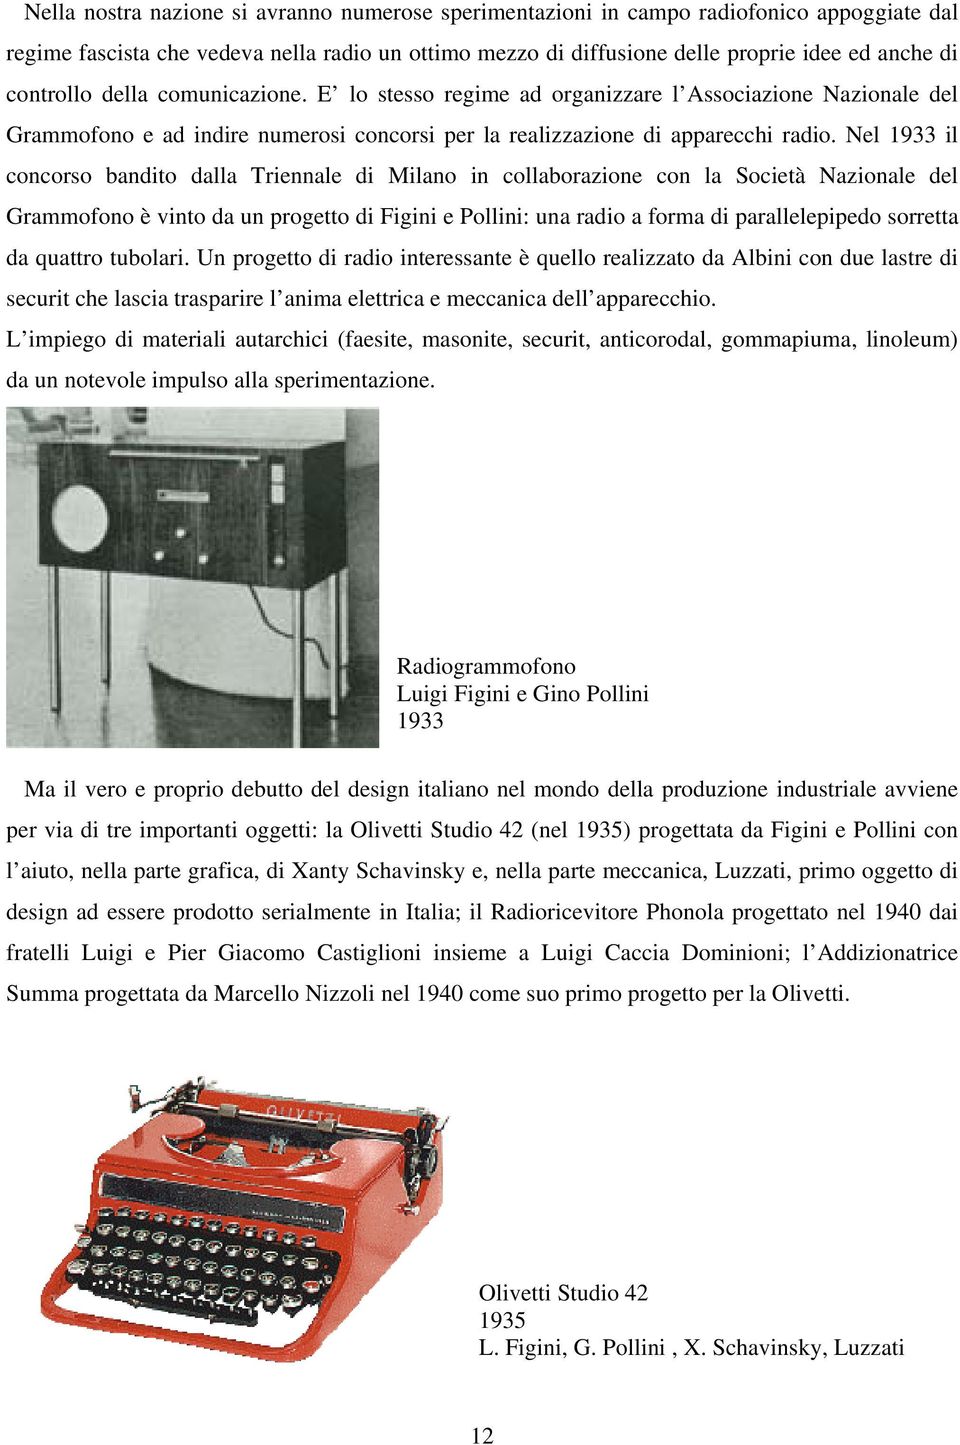 Nel 1933 il concorso bandito dalla Triennale di Milano in collaborazione con la Società Nazionale del Grammofono è vinto da un progetto di Figini e Pollini: una radio a forma di parallelepipedo